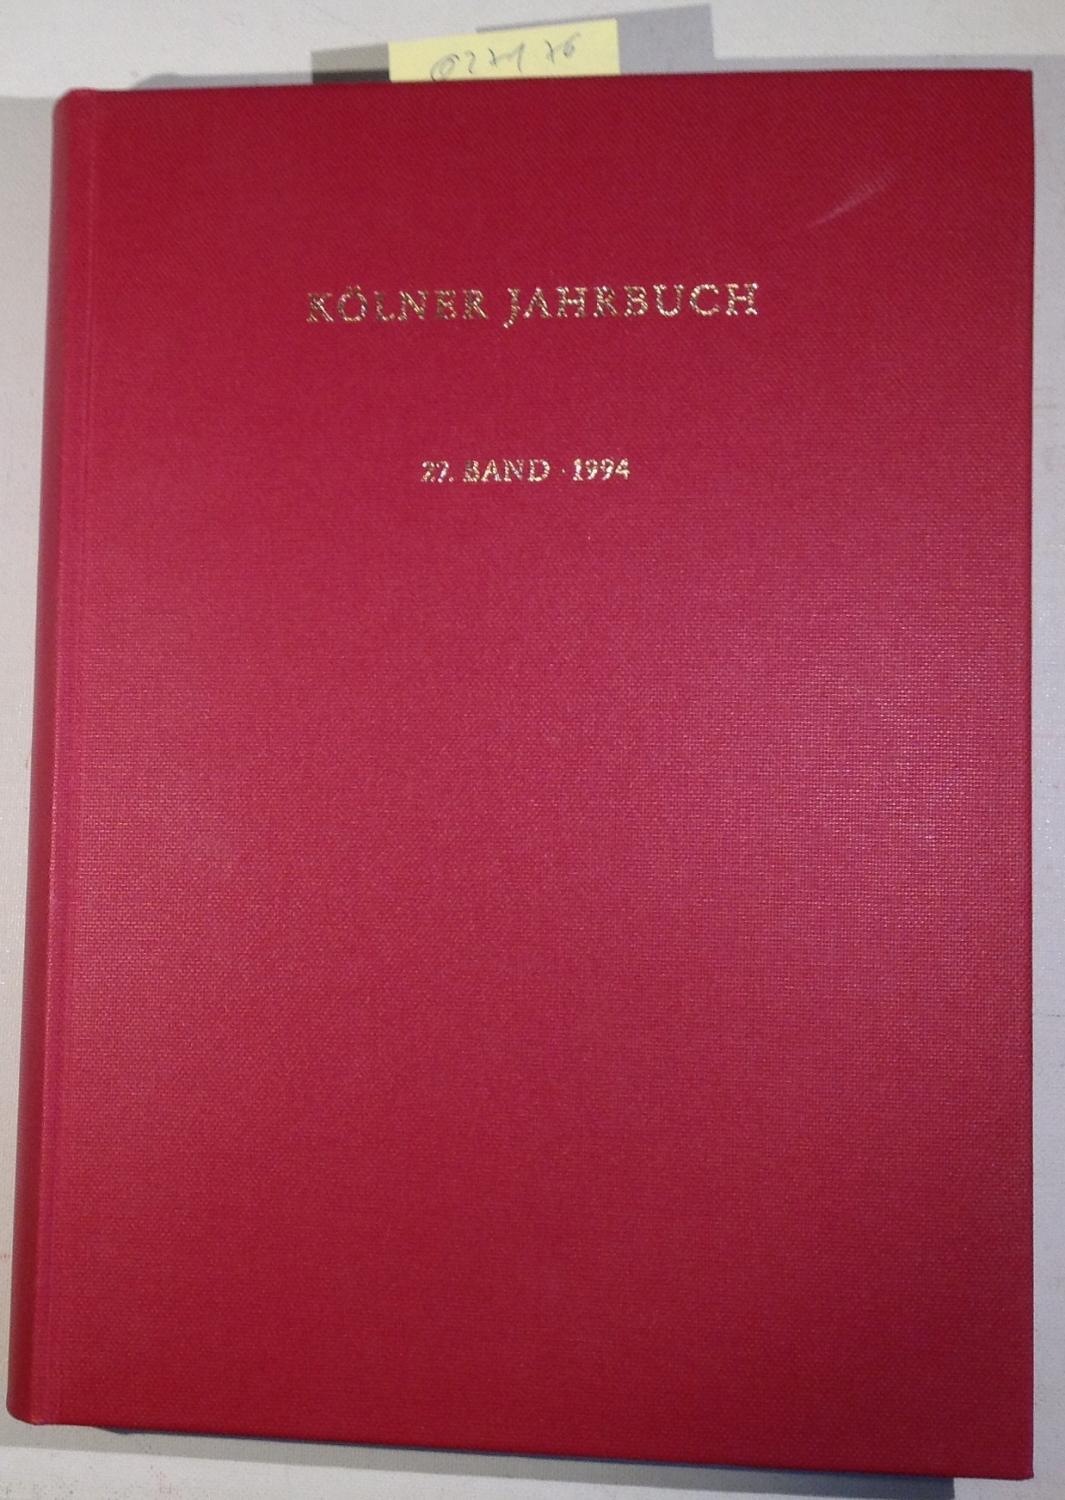 Kölner Jahrbuch 27. Band, 1994 - Herausgegeben vom Römisch-Germanischen Museum und der Archäologischen Gesellschaft Köln - Thomas, Renate - Redaktion